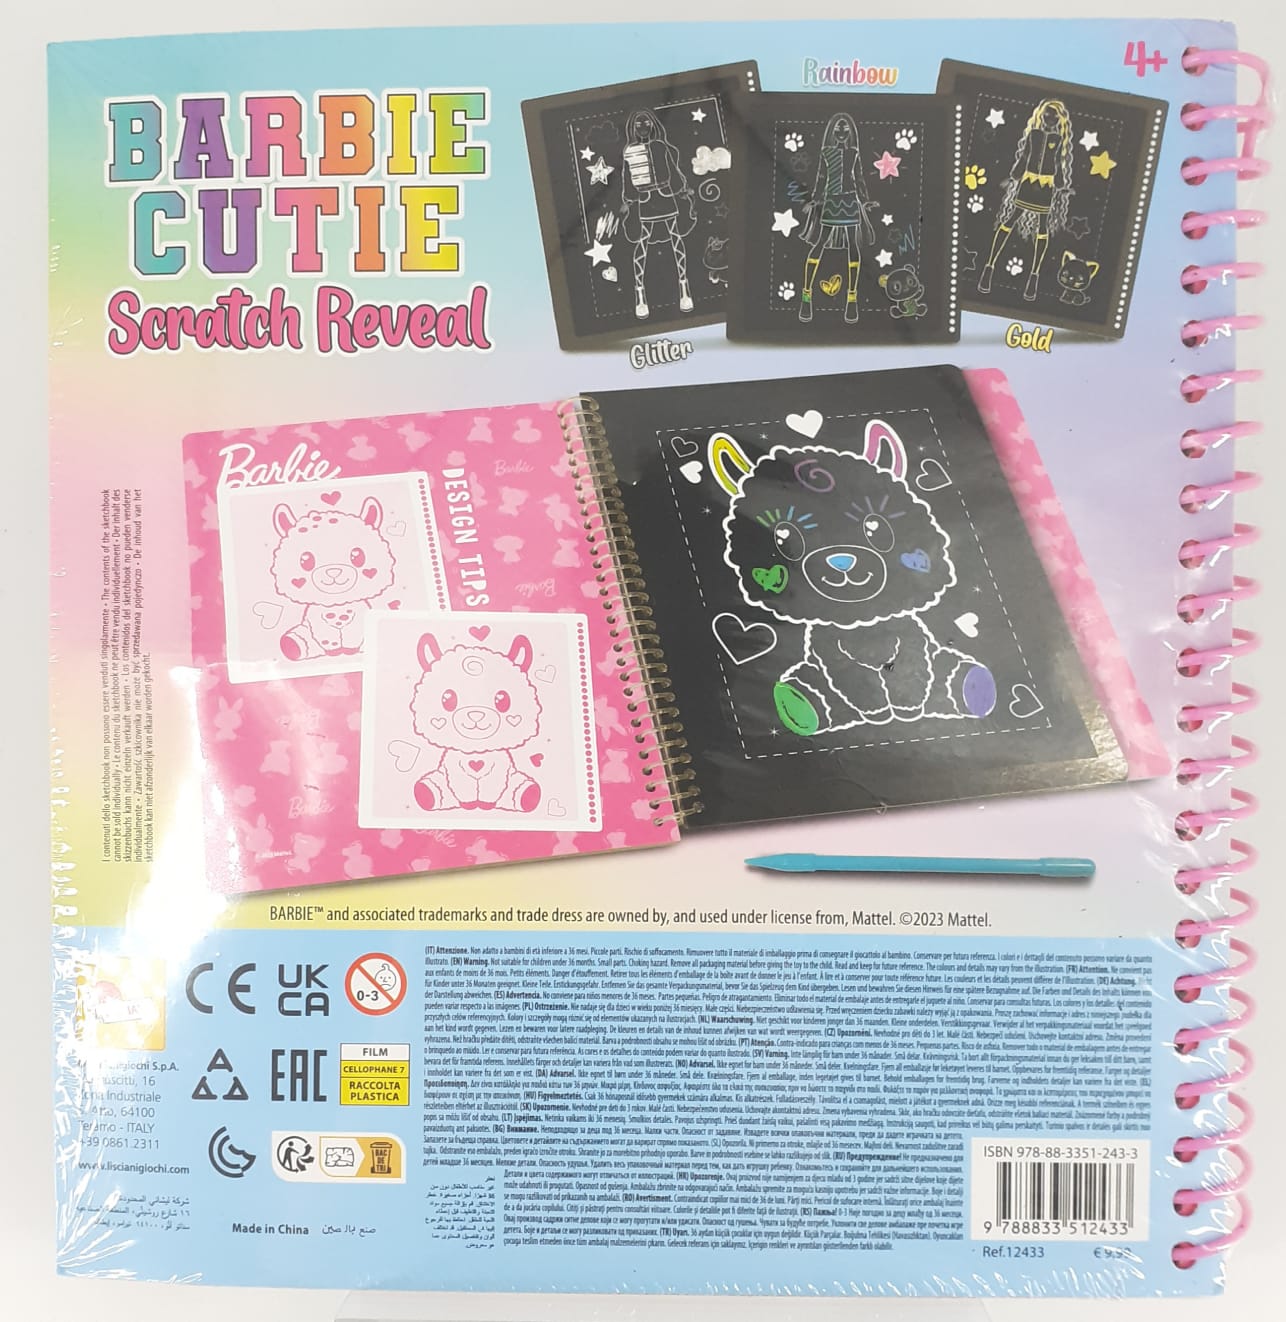 barbie sketchbook cutie scratch reveal